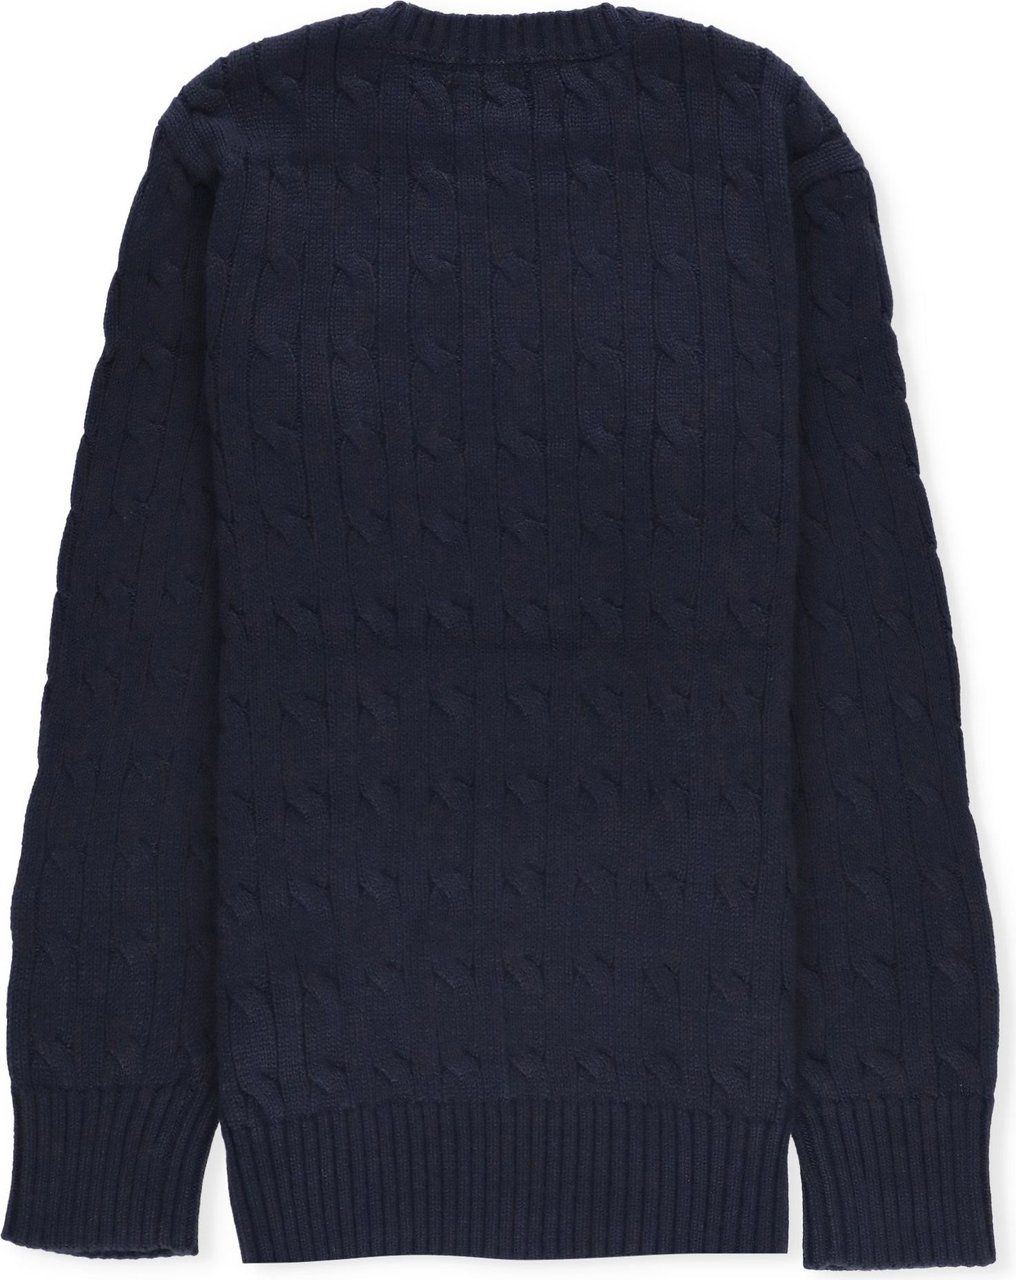 Ralph Lauren ls cable top sweater darkblue (navy) Blauw